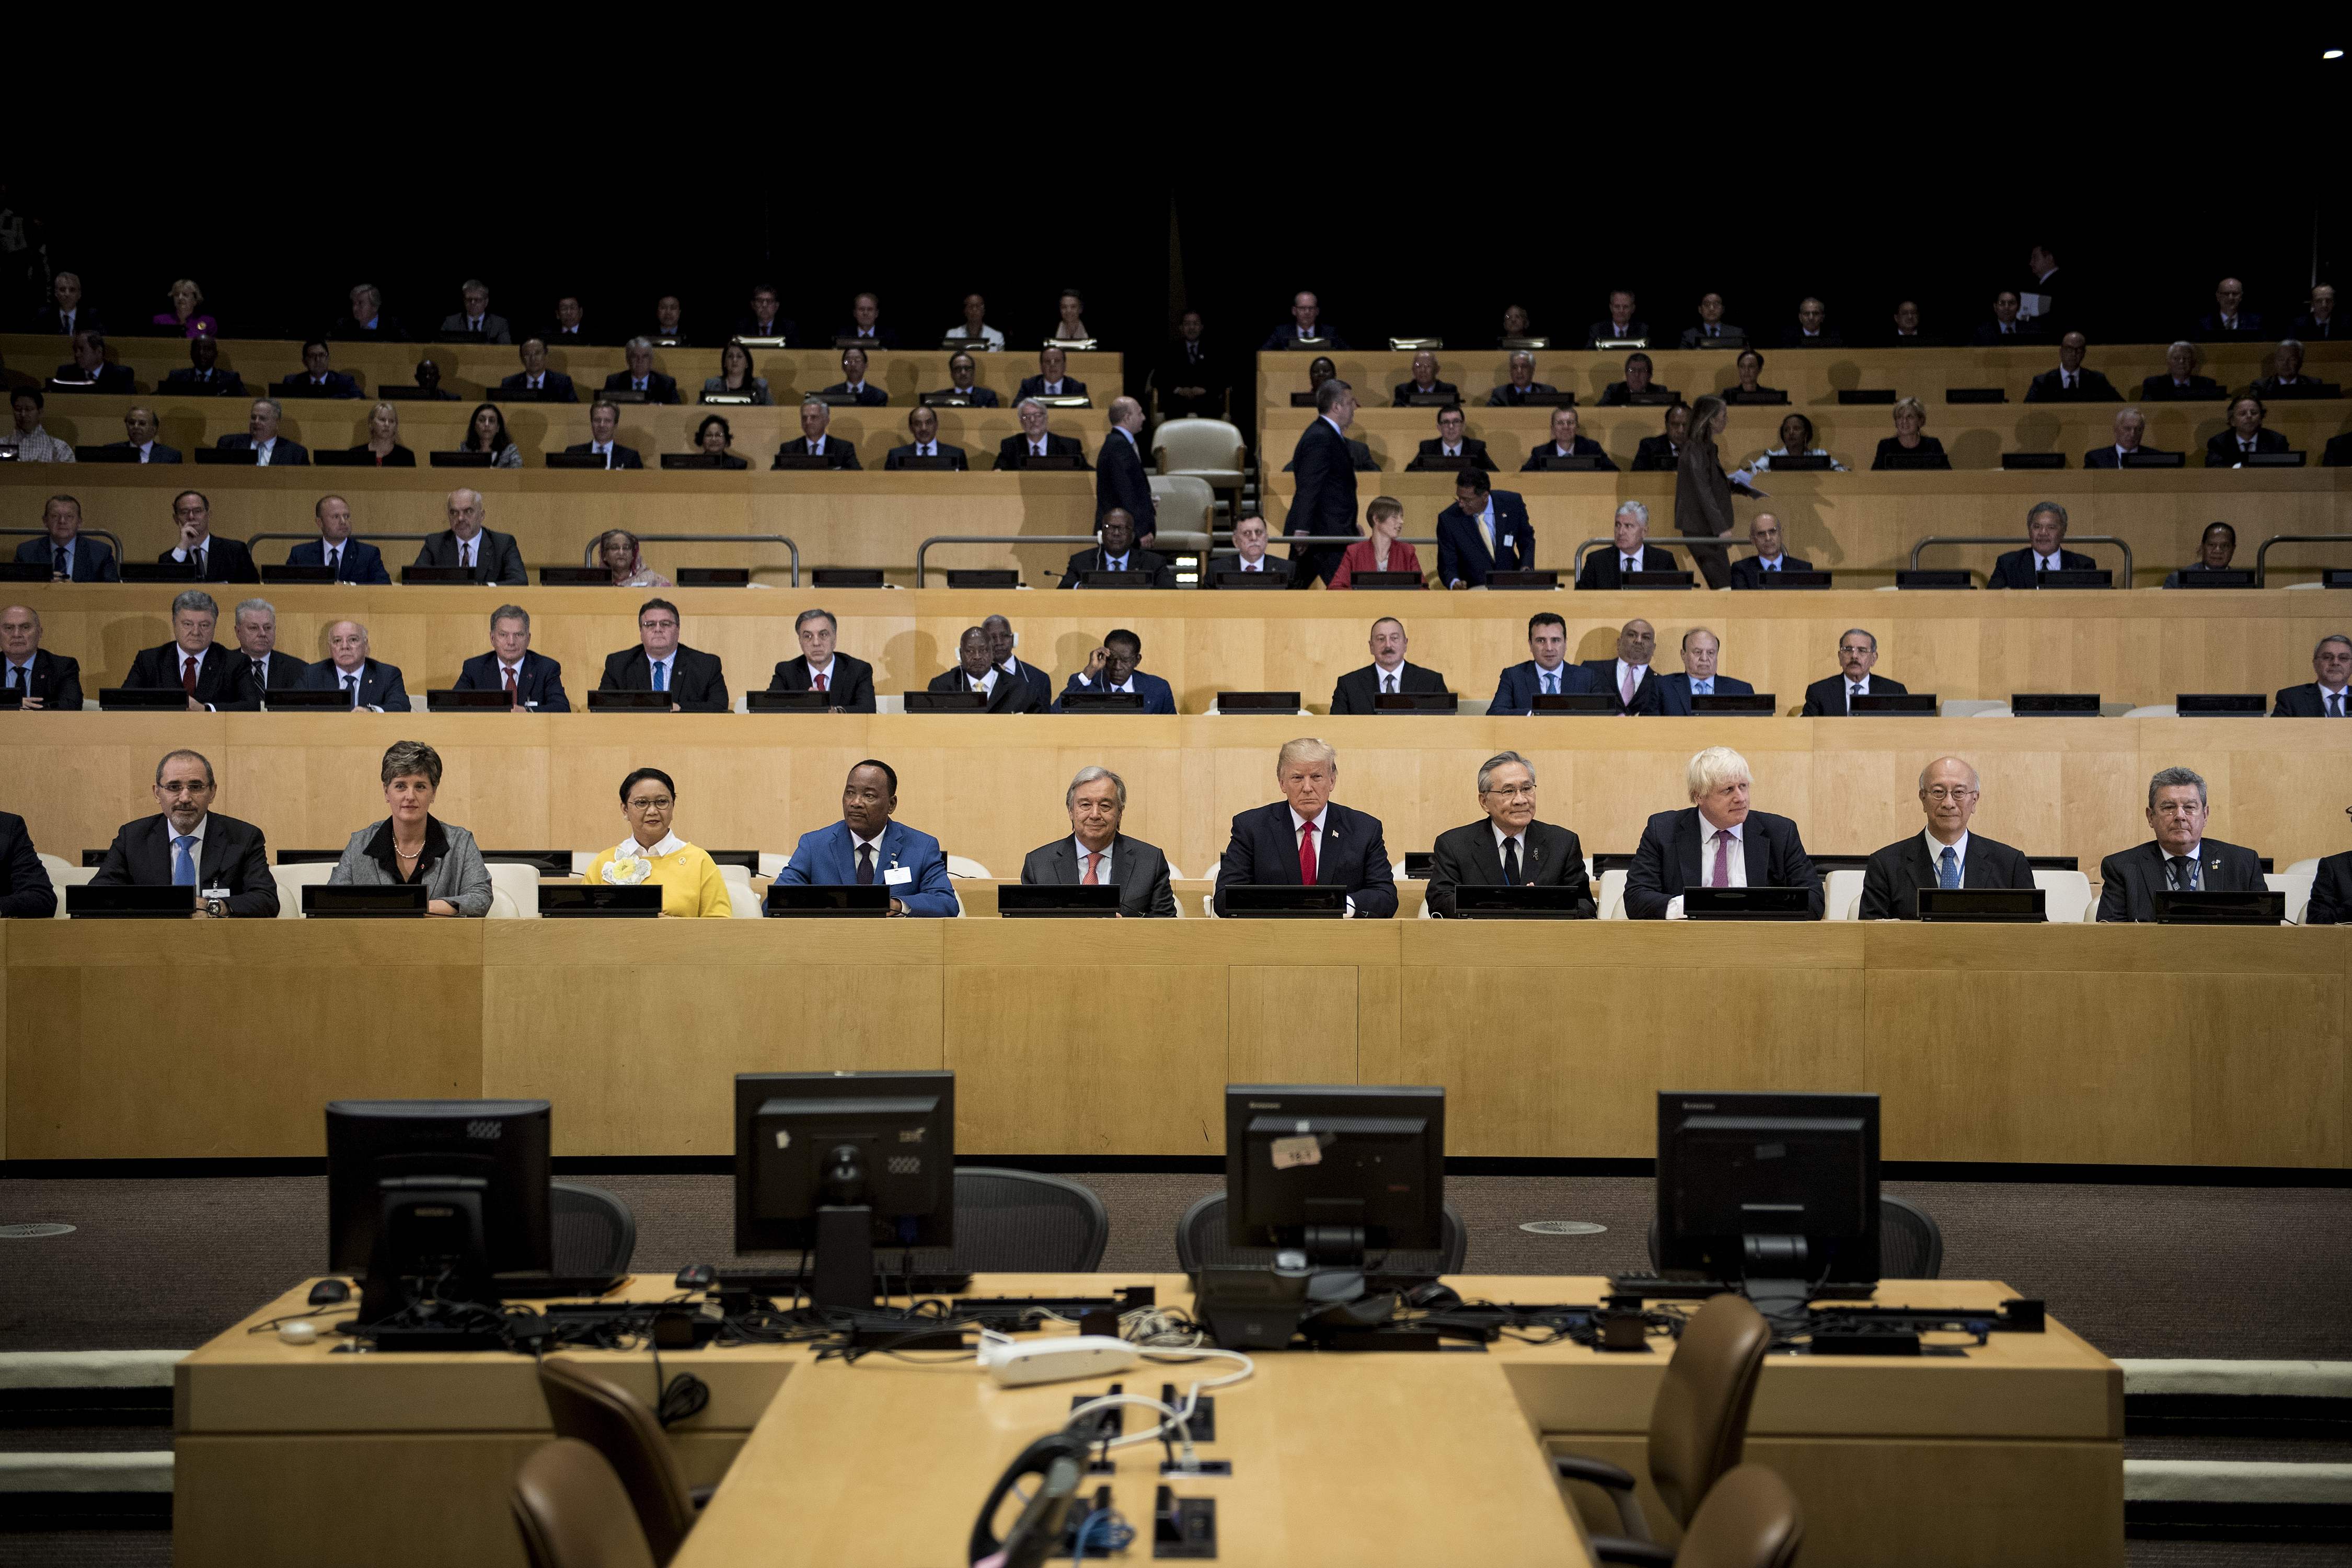 جلسة الجمعية العامة للأمم المتحدة